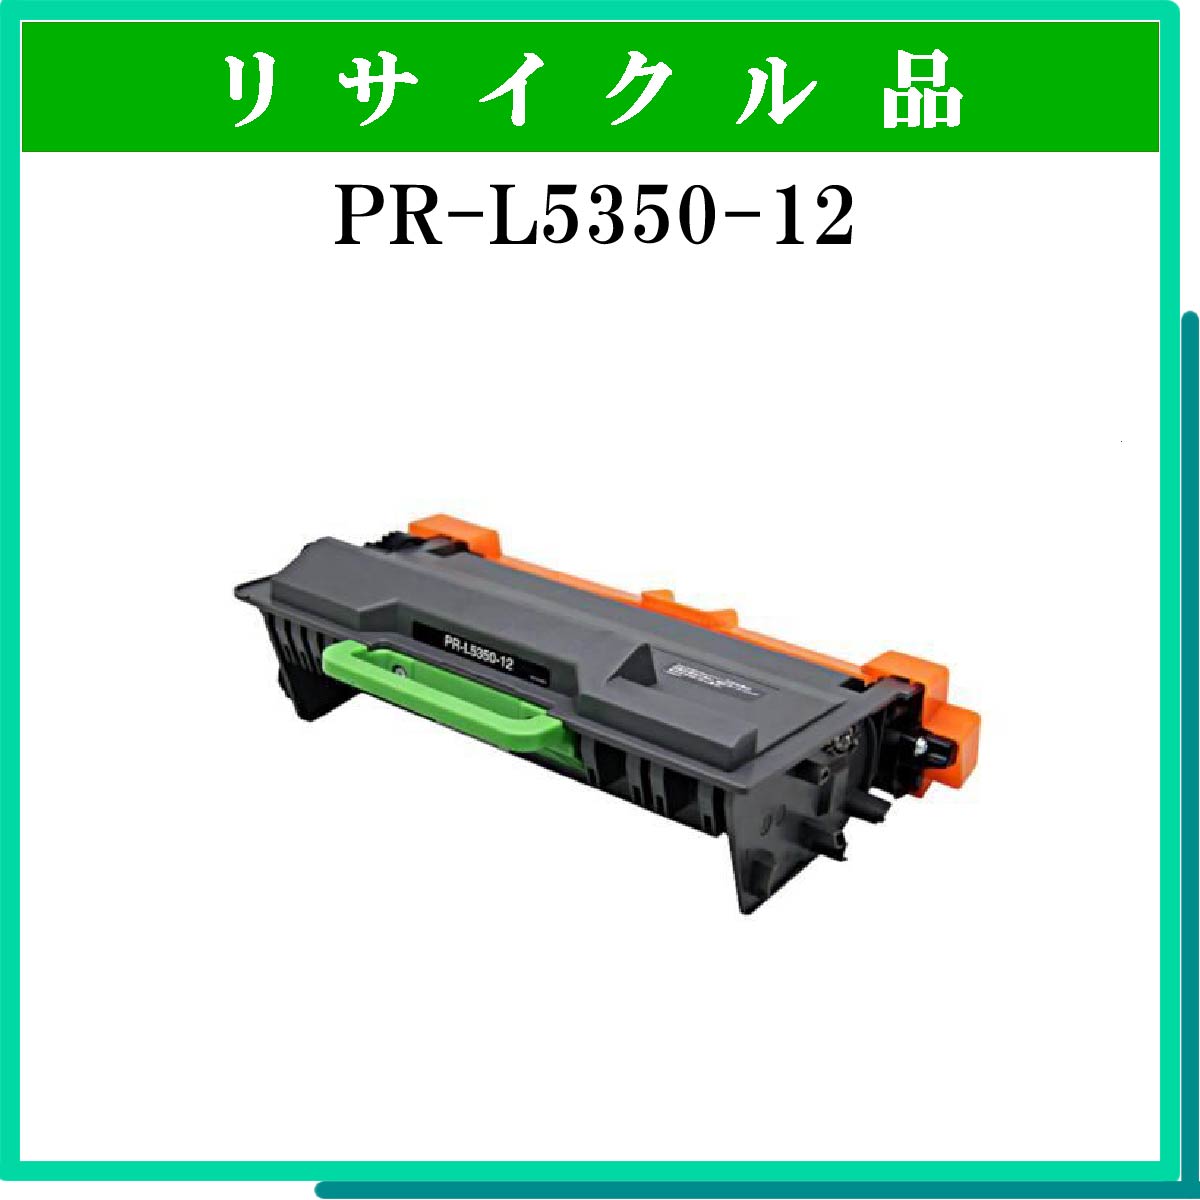 PR-L5350-12